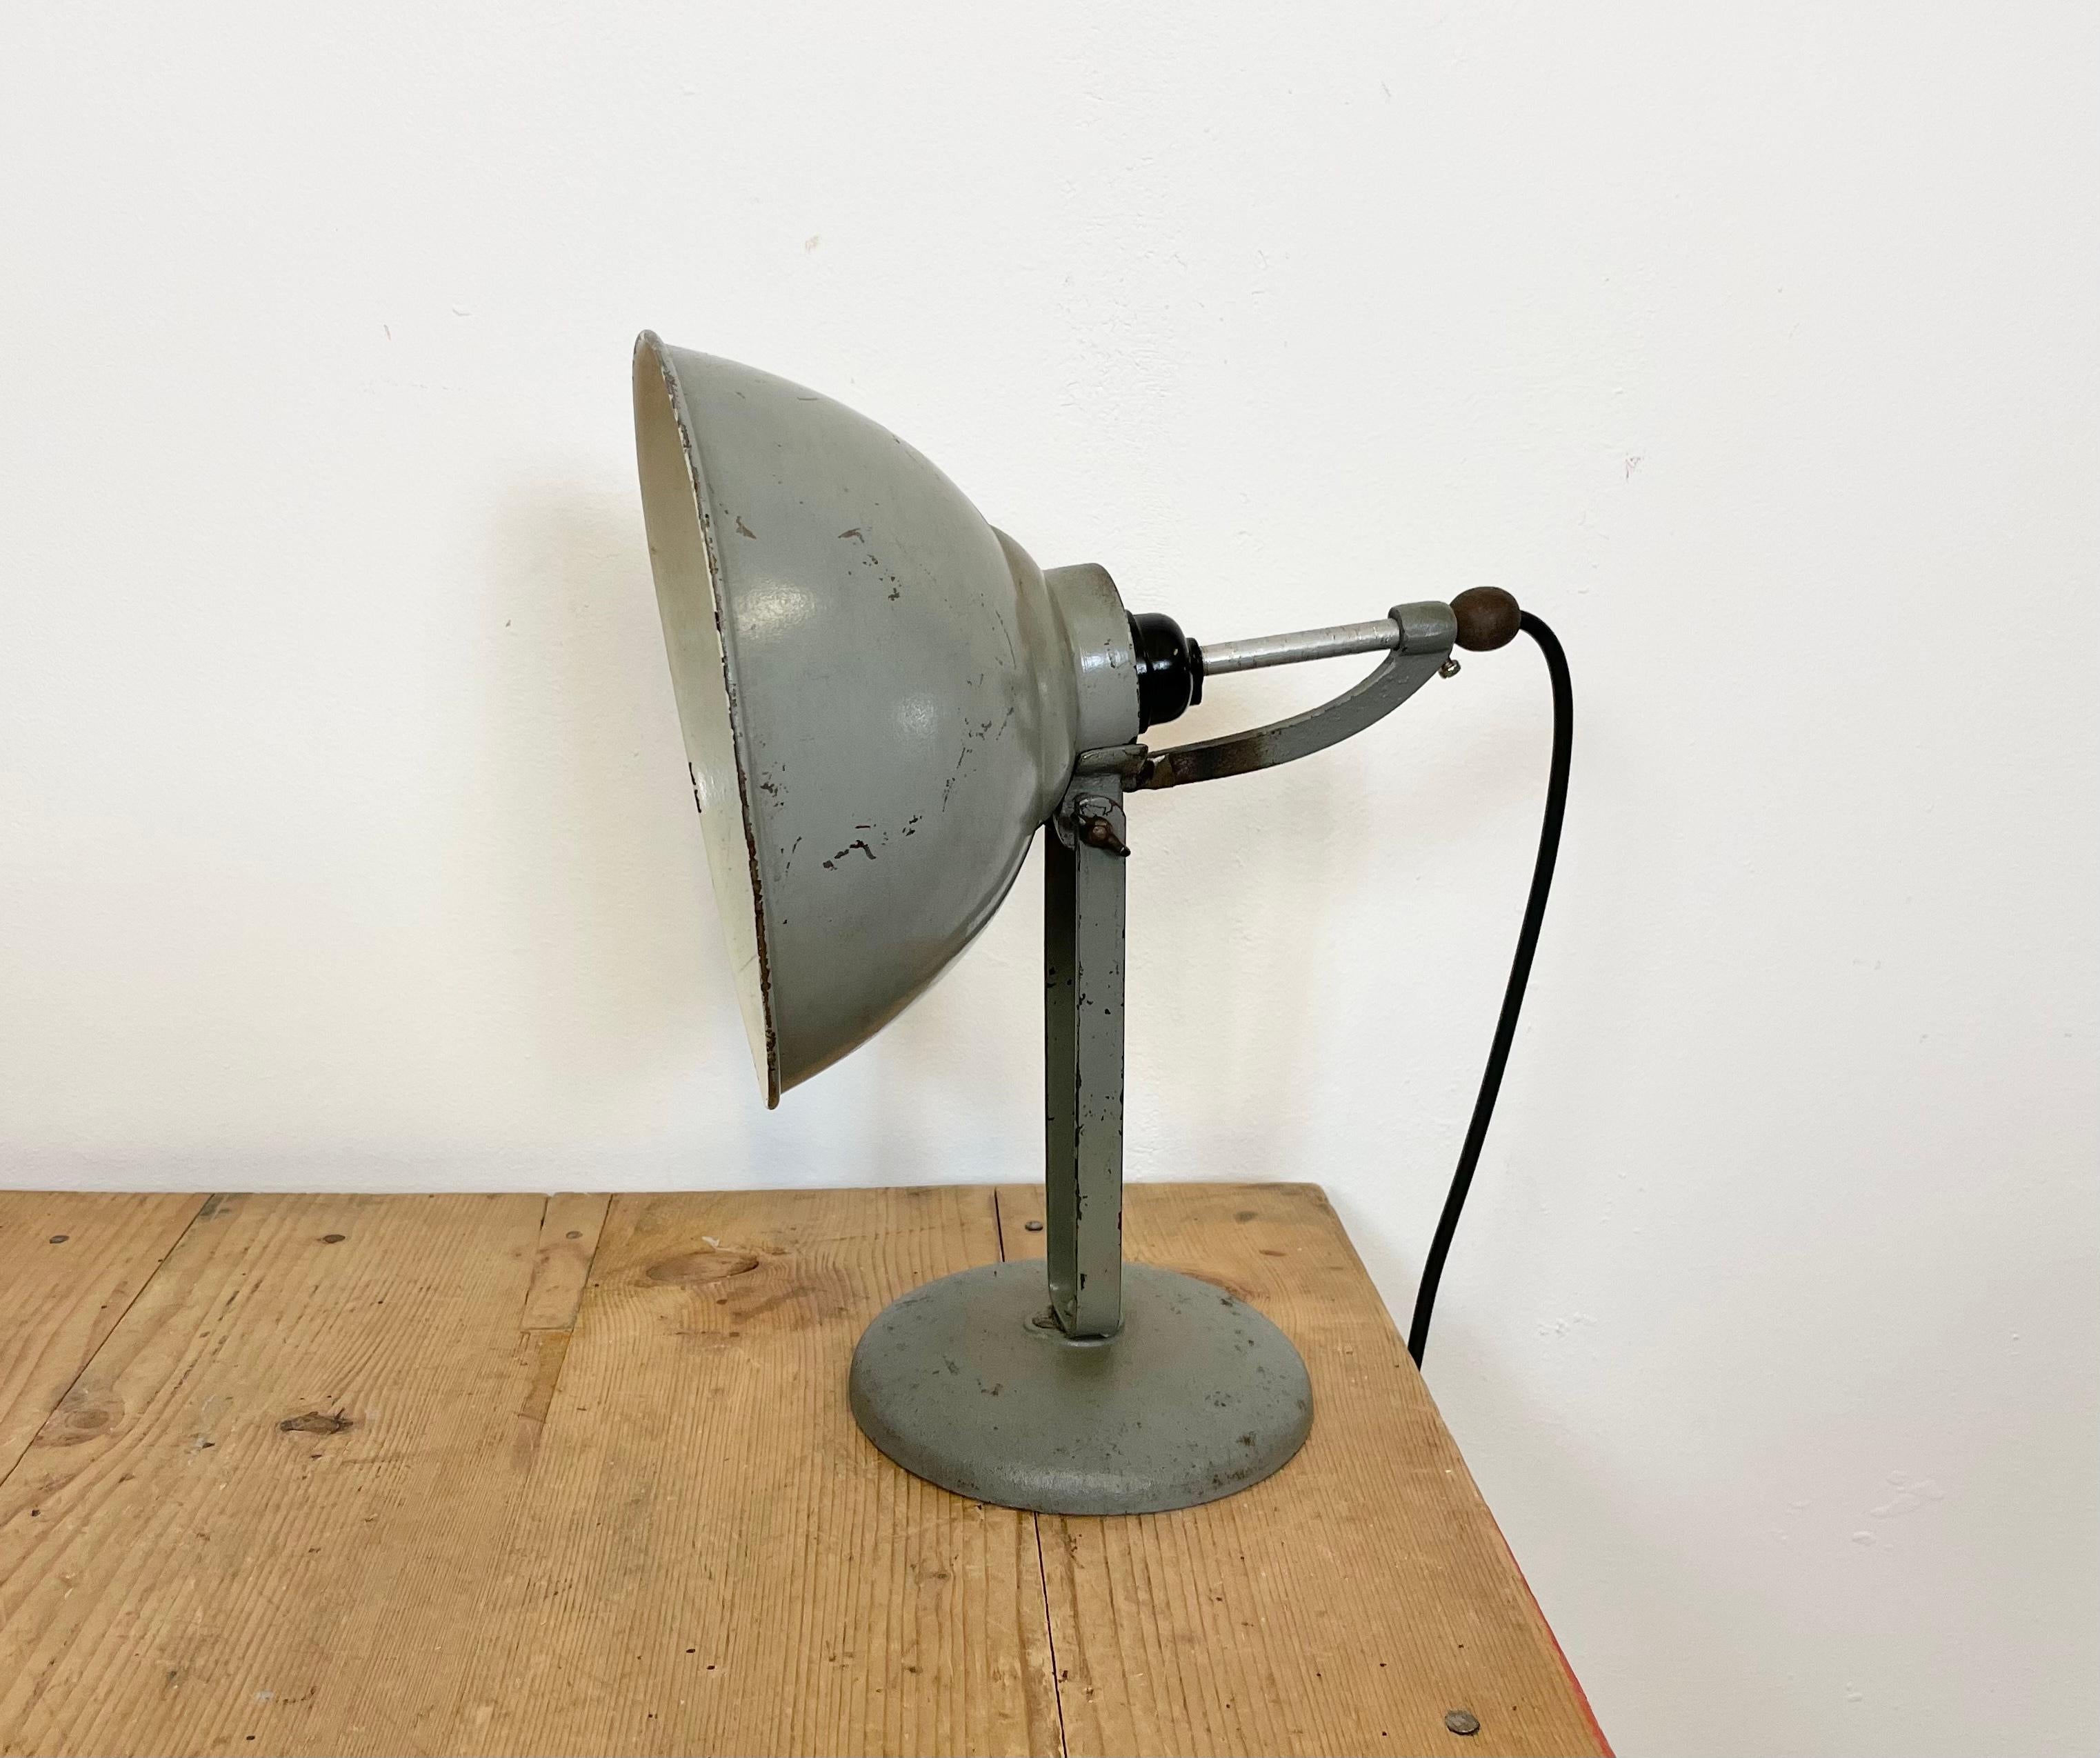 - Lampe de table industrielle fabriquée dans l'ancienne Tchécoslovaquie dans les années 1970
- Base en fonte et abat-jour réglable en fer
- La douille en porcelaine nécessite des ampoules E 27
- Nouveau câble
- Le poids de la lampe est de 1,2 kg.